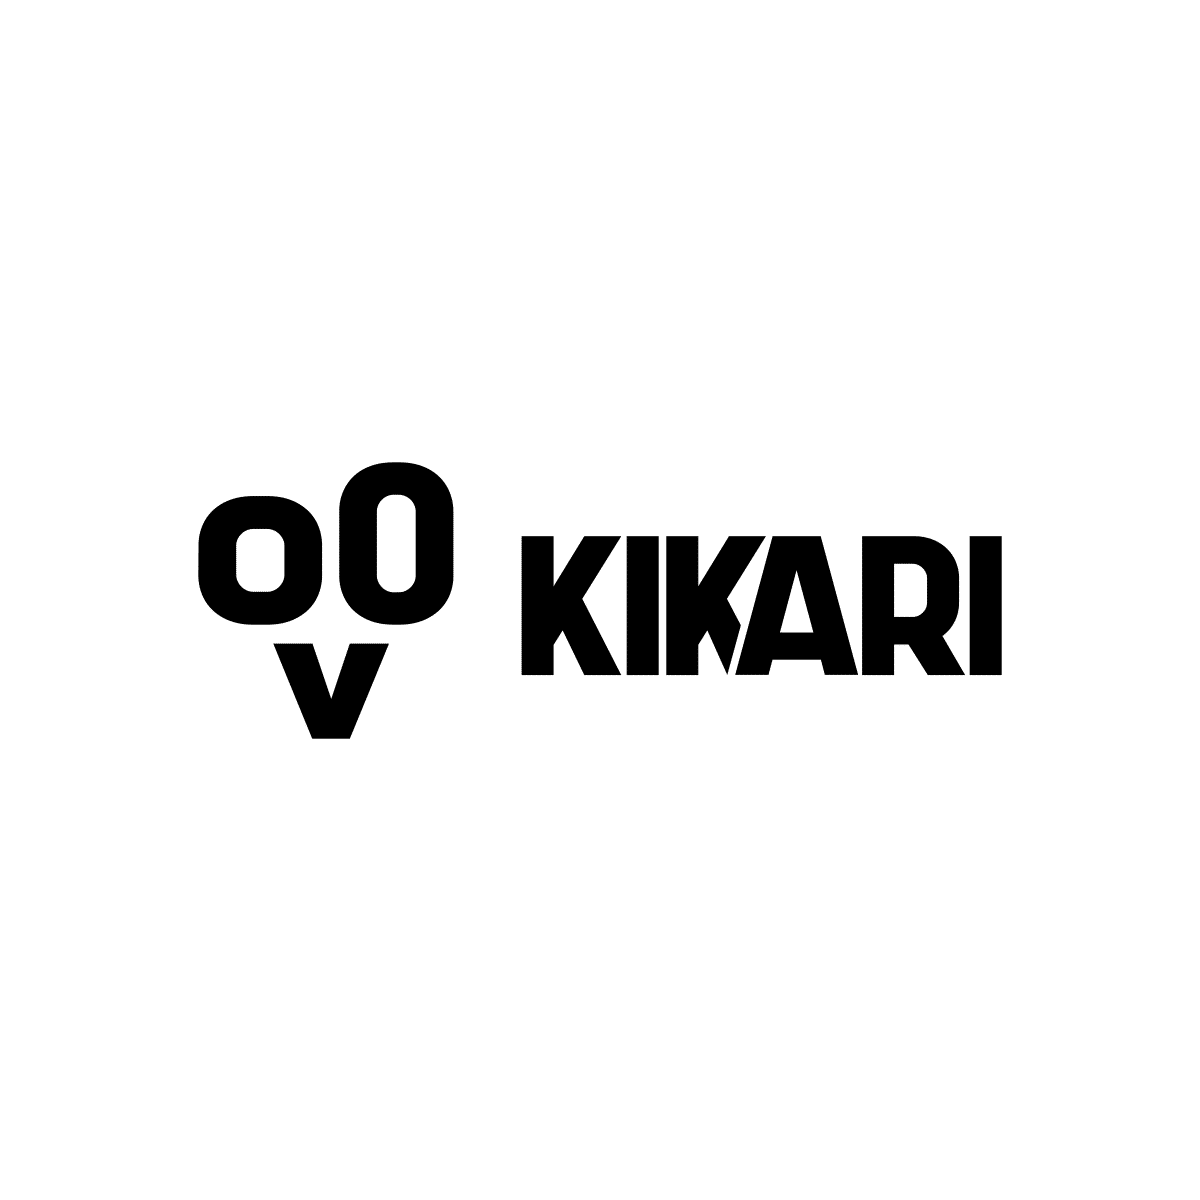 Kikari Logo